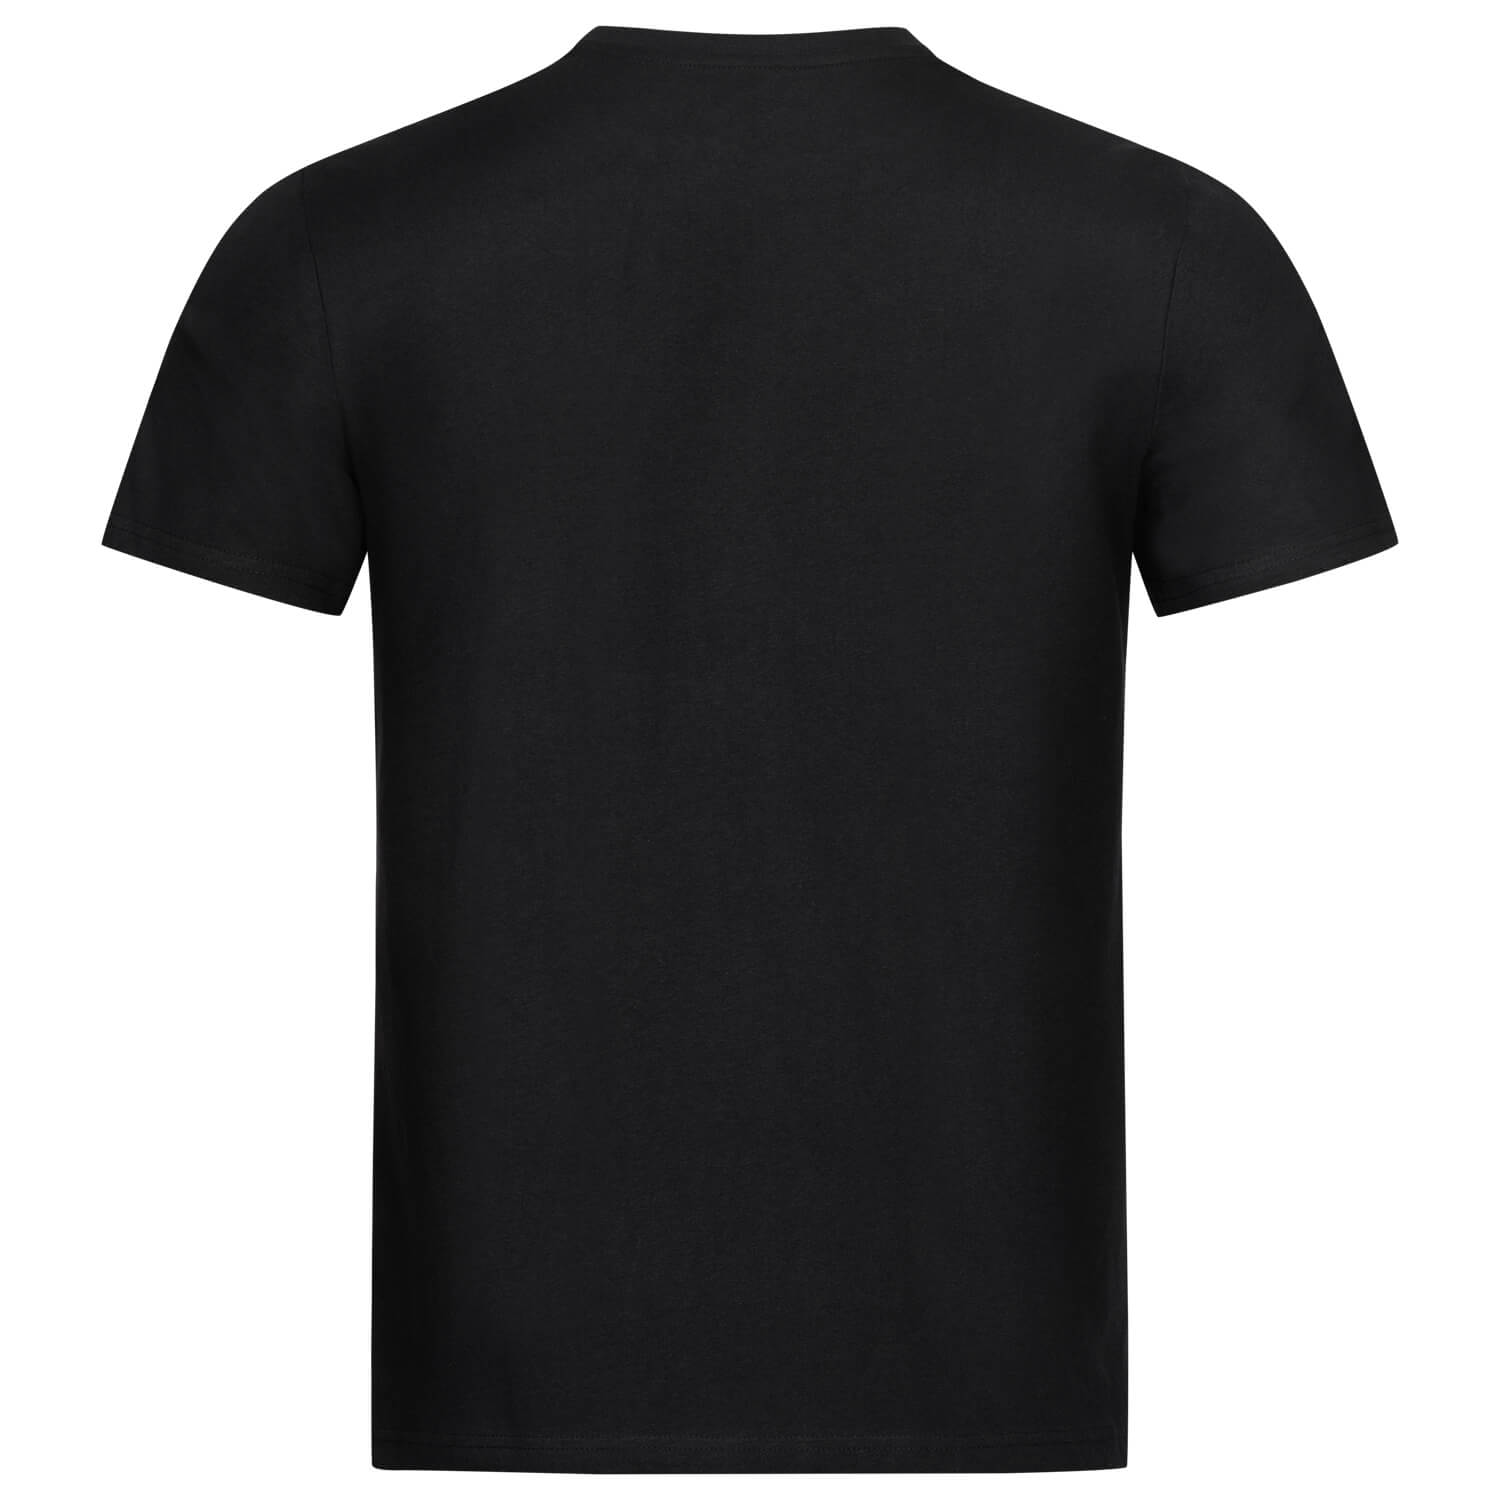 Bild 2: T-Shirt Basic black 